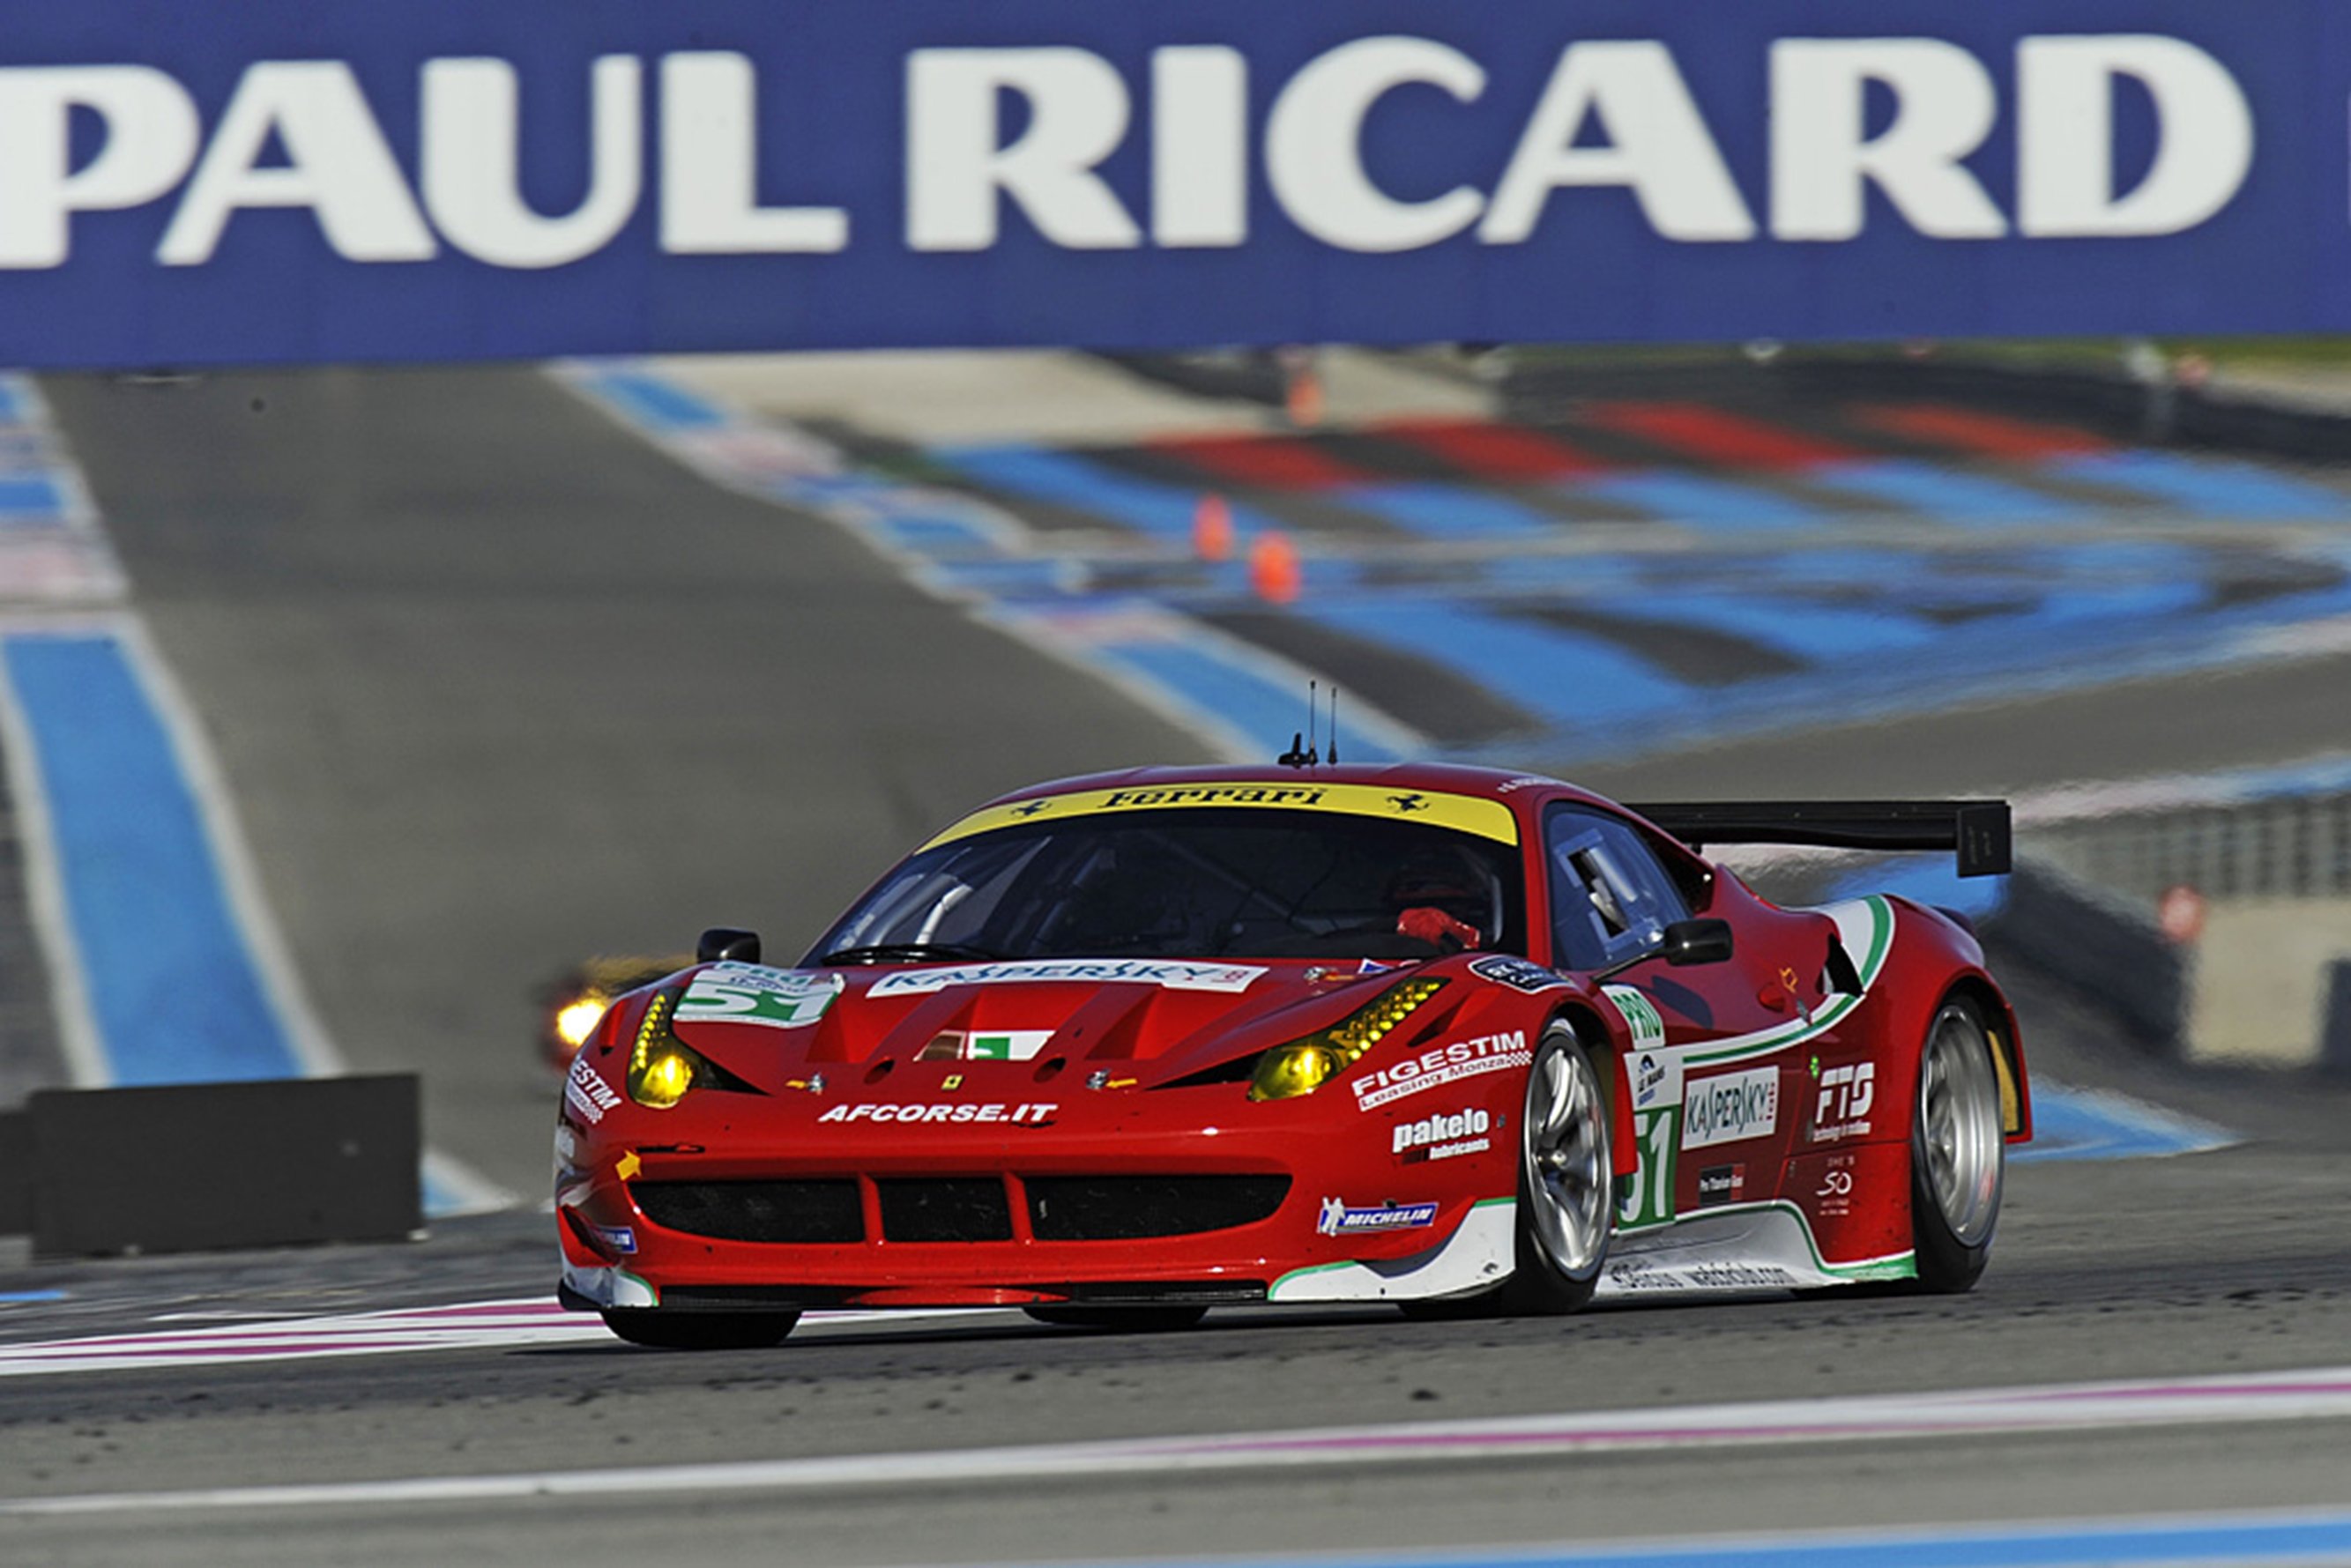 supercar, Ferrari, Race, Paul ricard, Racing, Car, Red, Italy Wallpaper